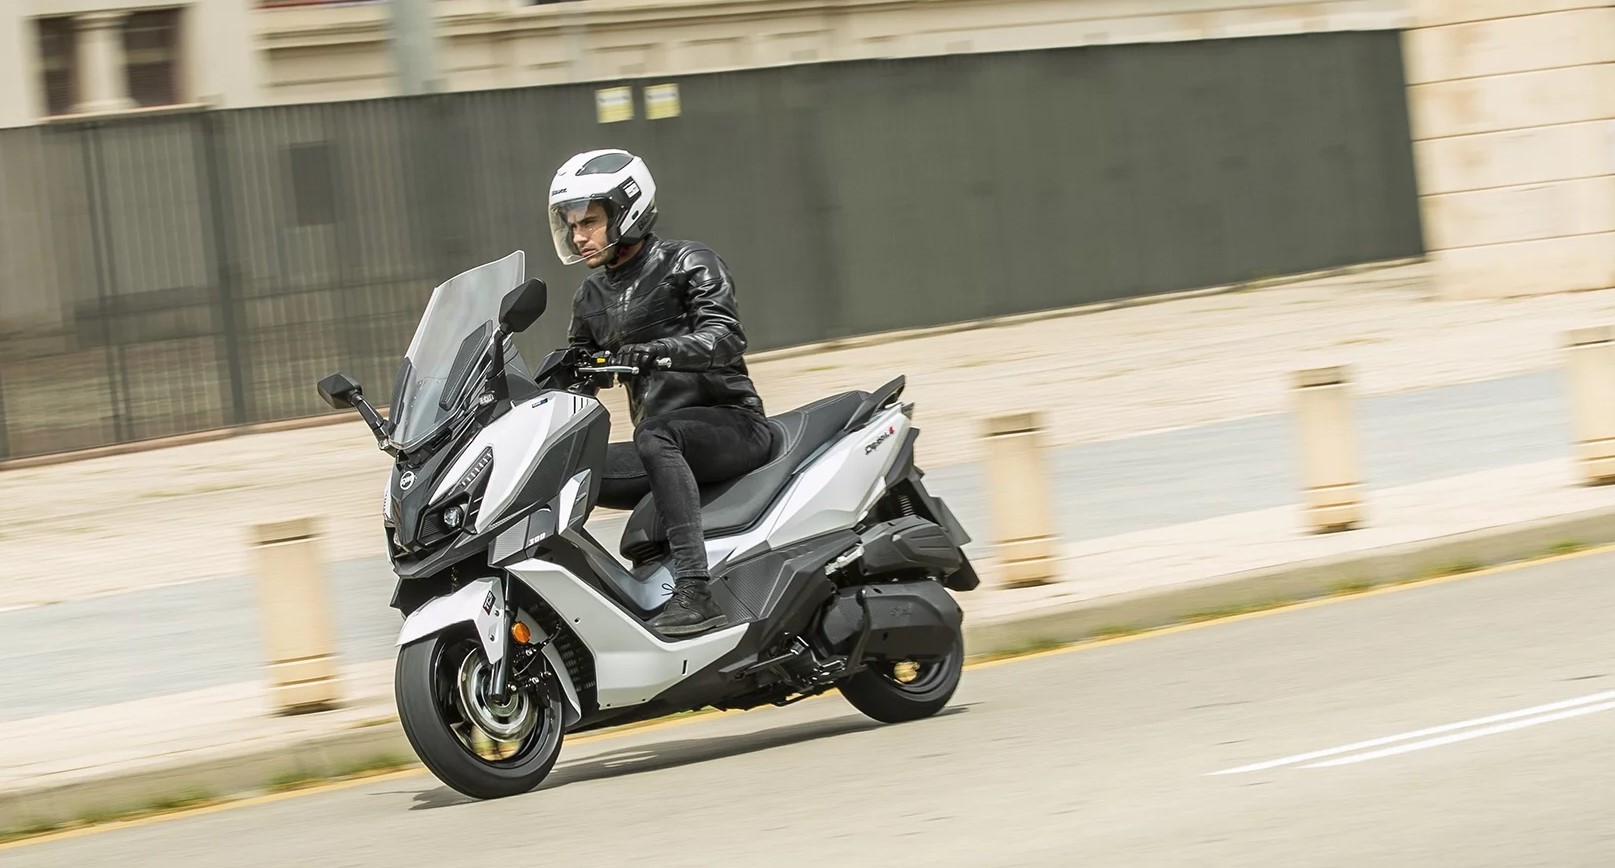 La oferta del SYM Cruisym Alpha 300 es perfecta para los que buscan un scooter GT con pretensiones sport para el carnet A2